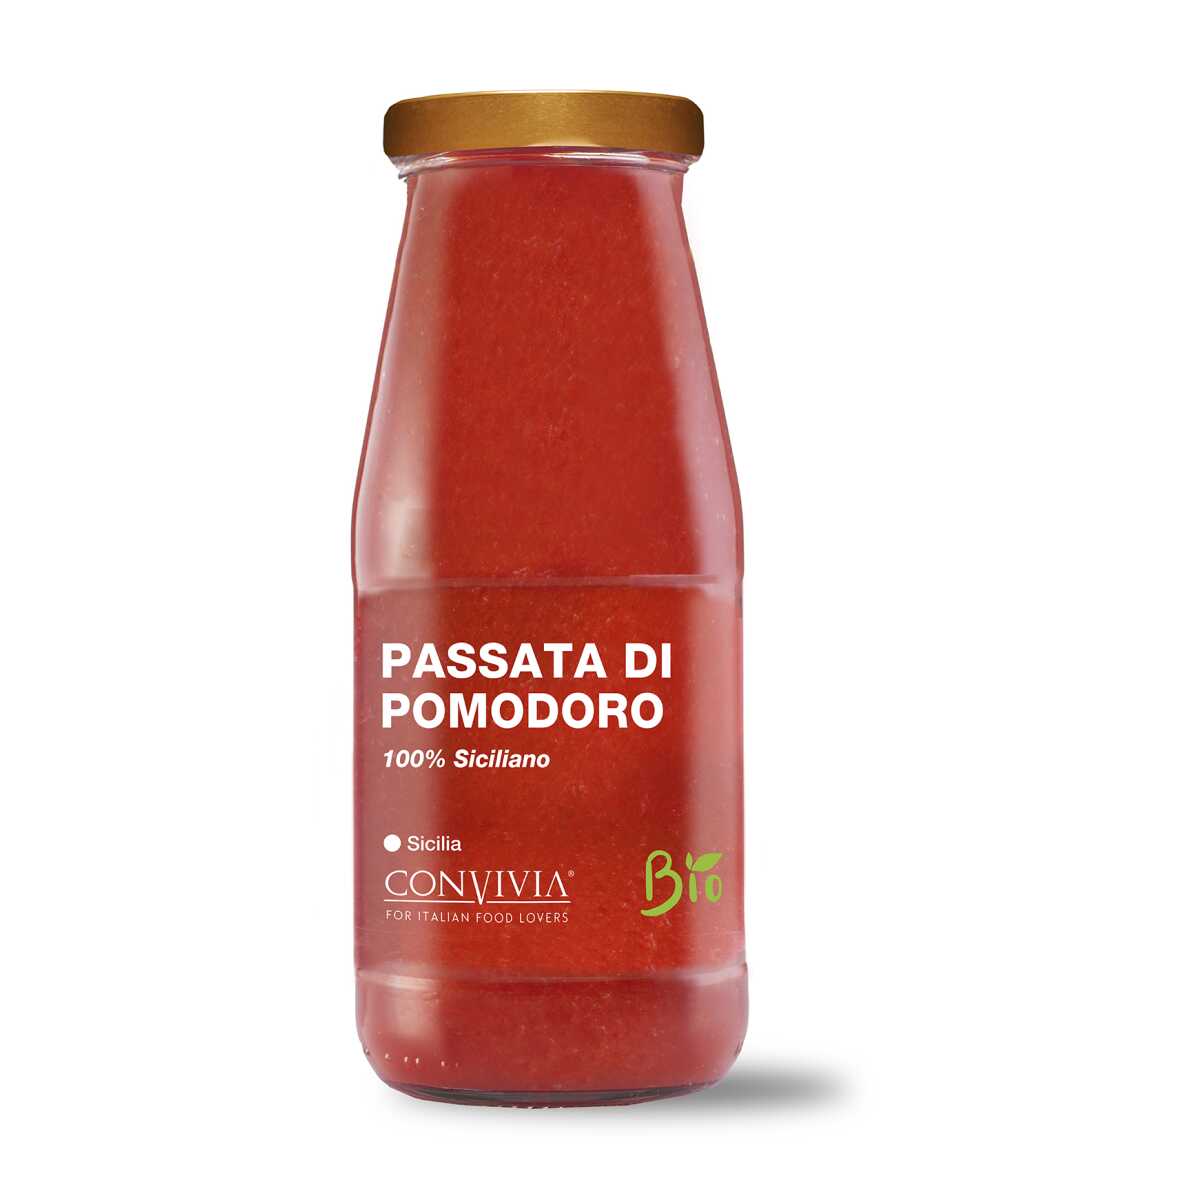 Passierte Tomaten - Passata di Pomodoro - Convivia Sicilia